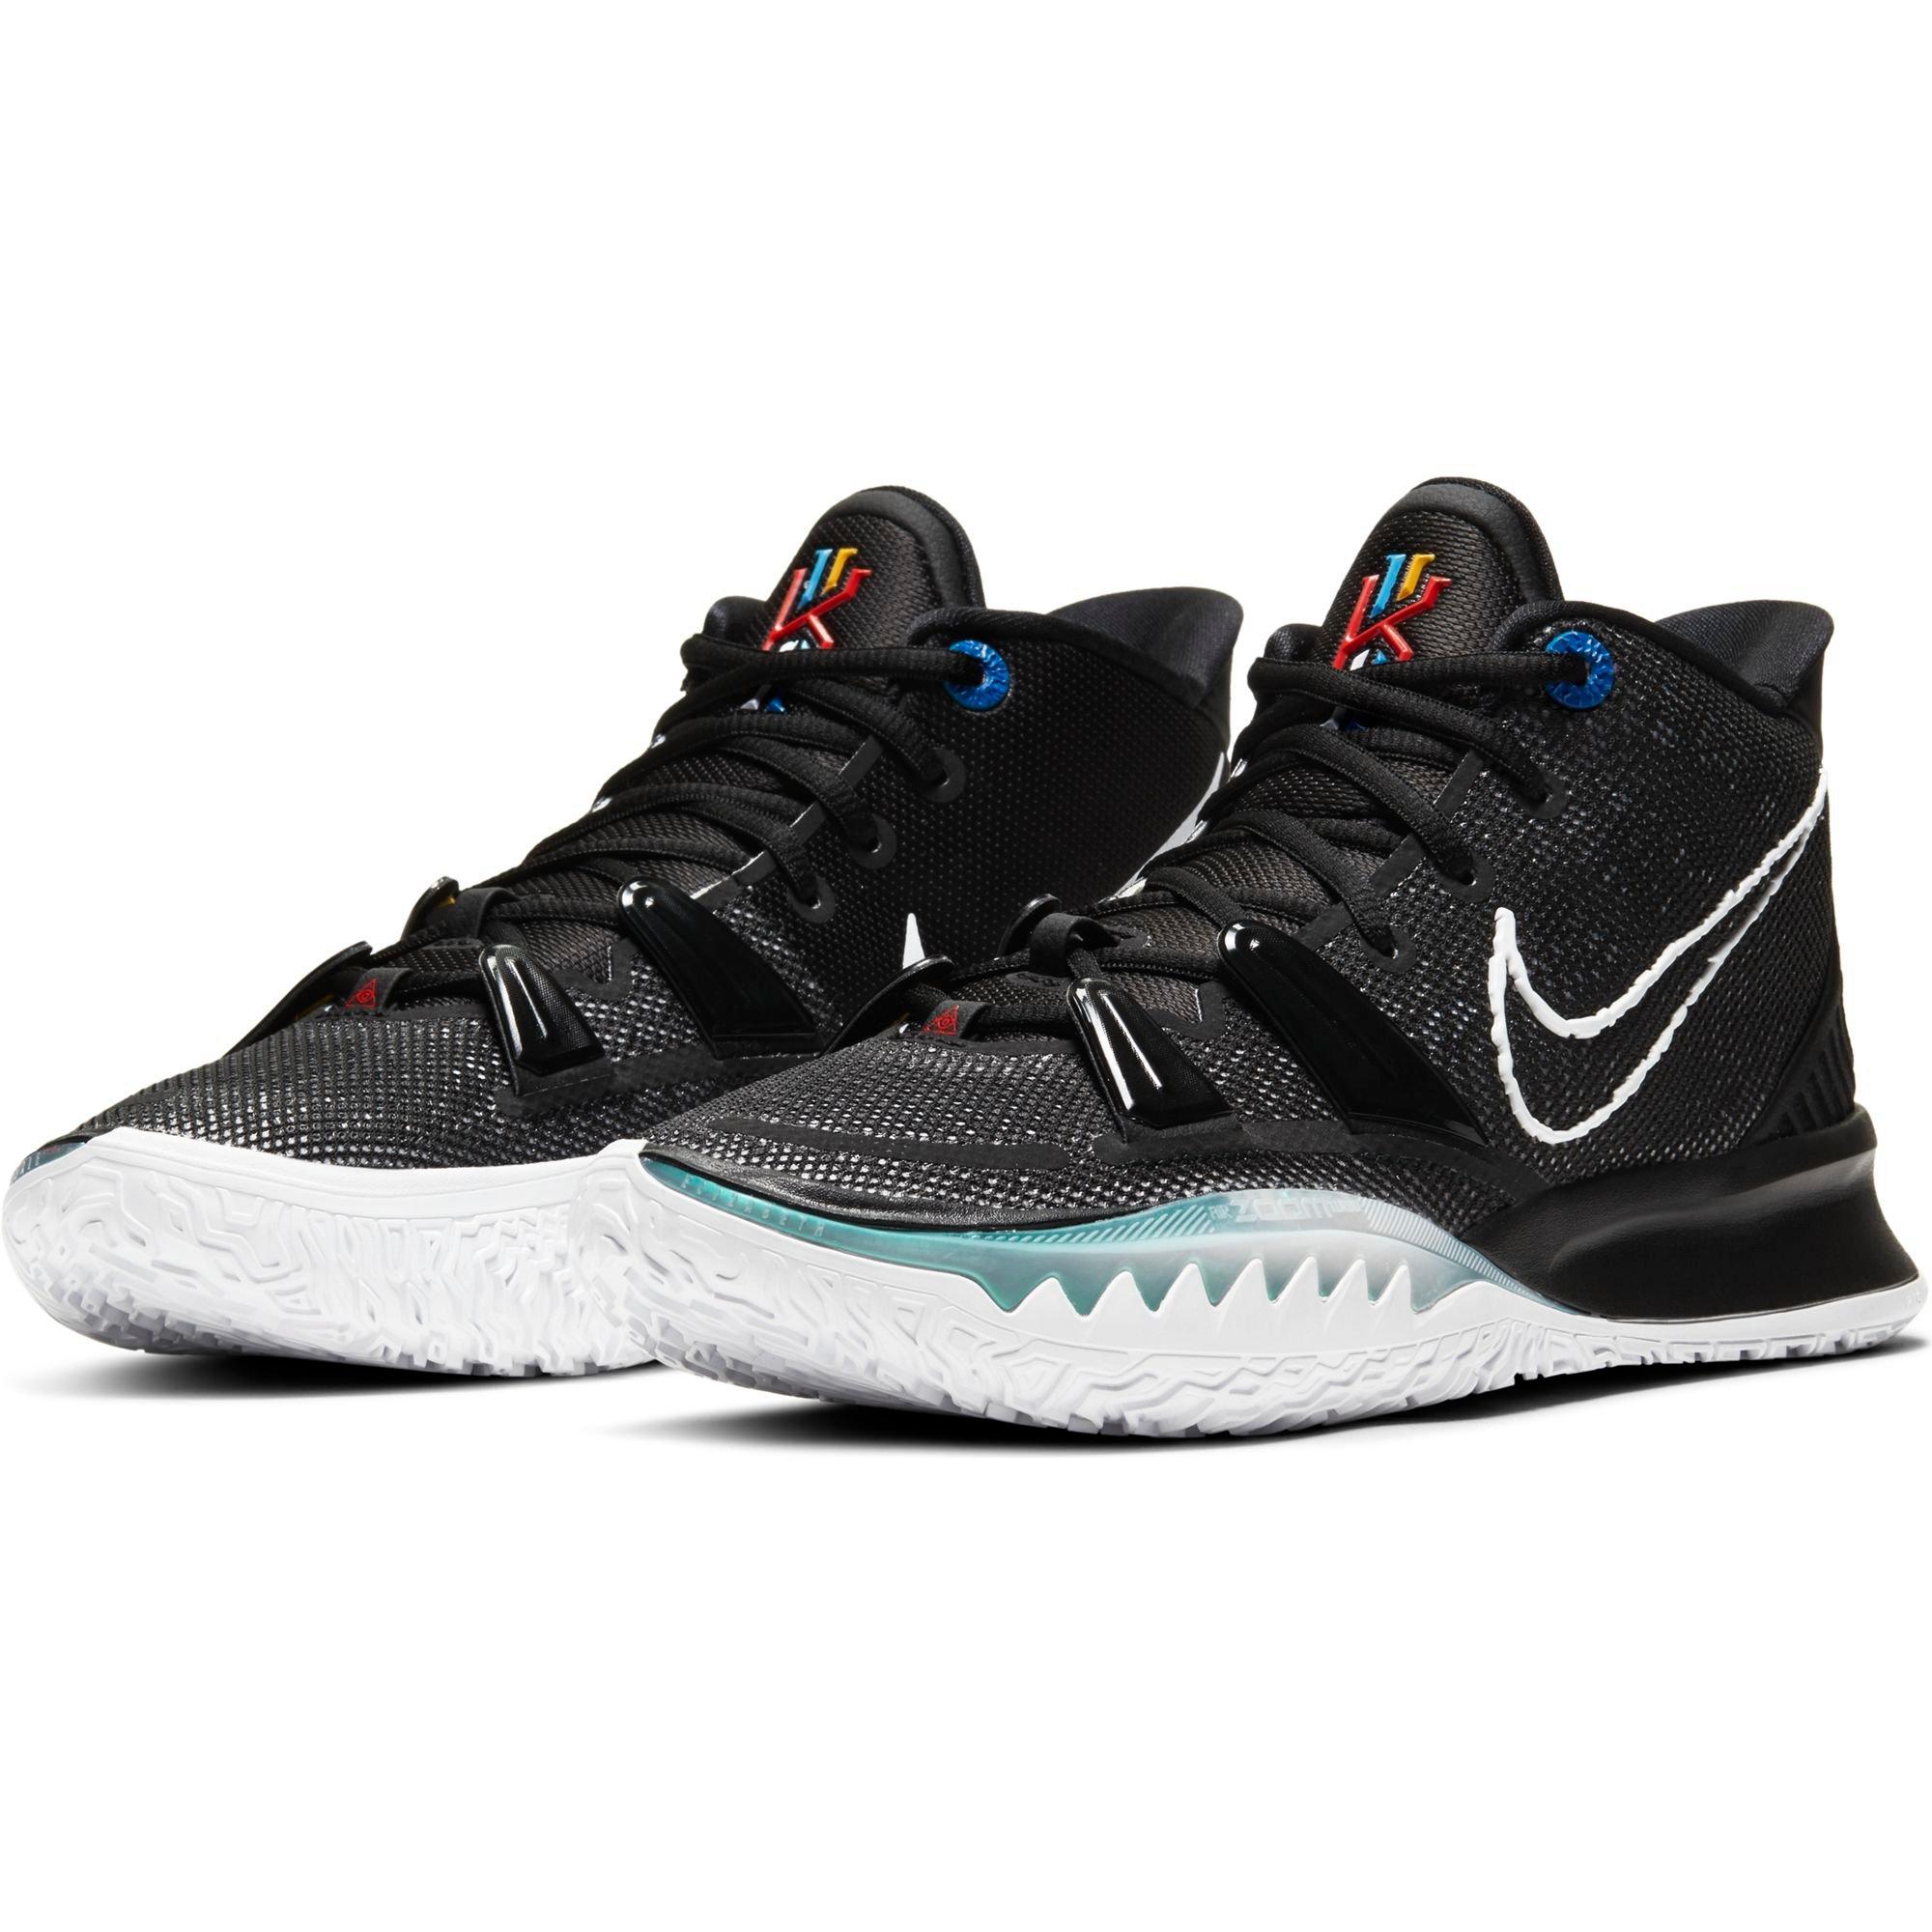 Sneakers Release- Nike Kyrie 7 “Black 